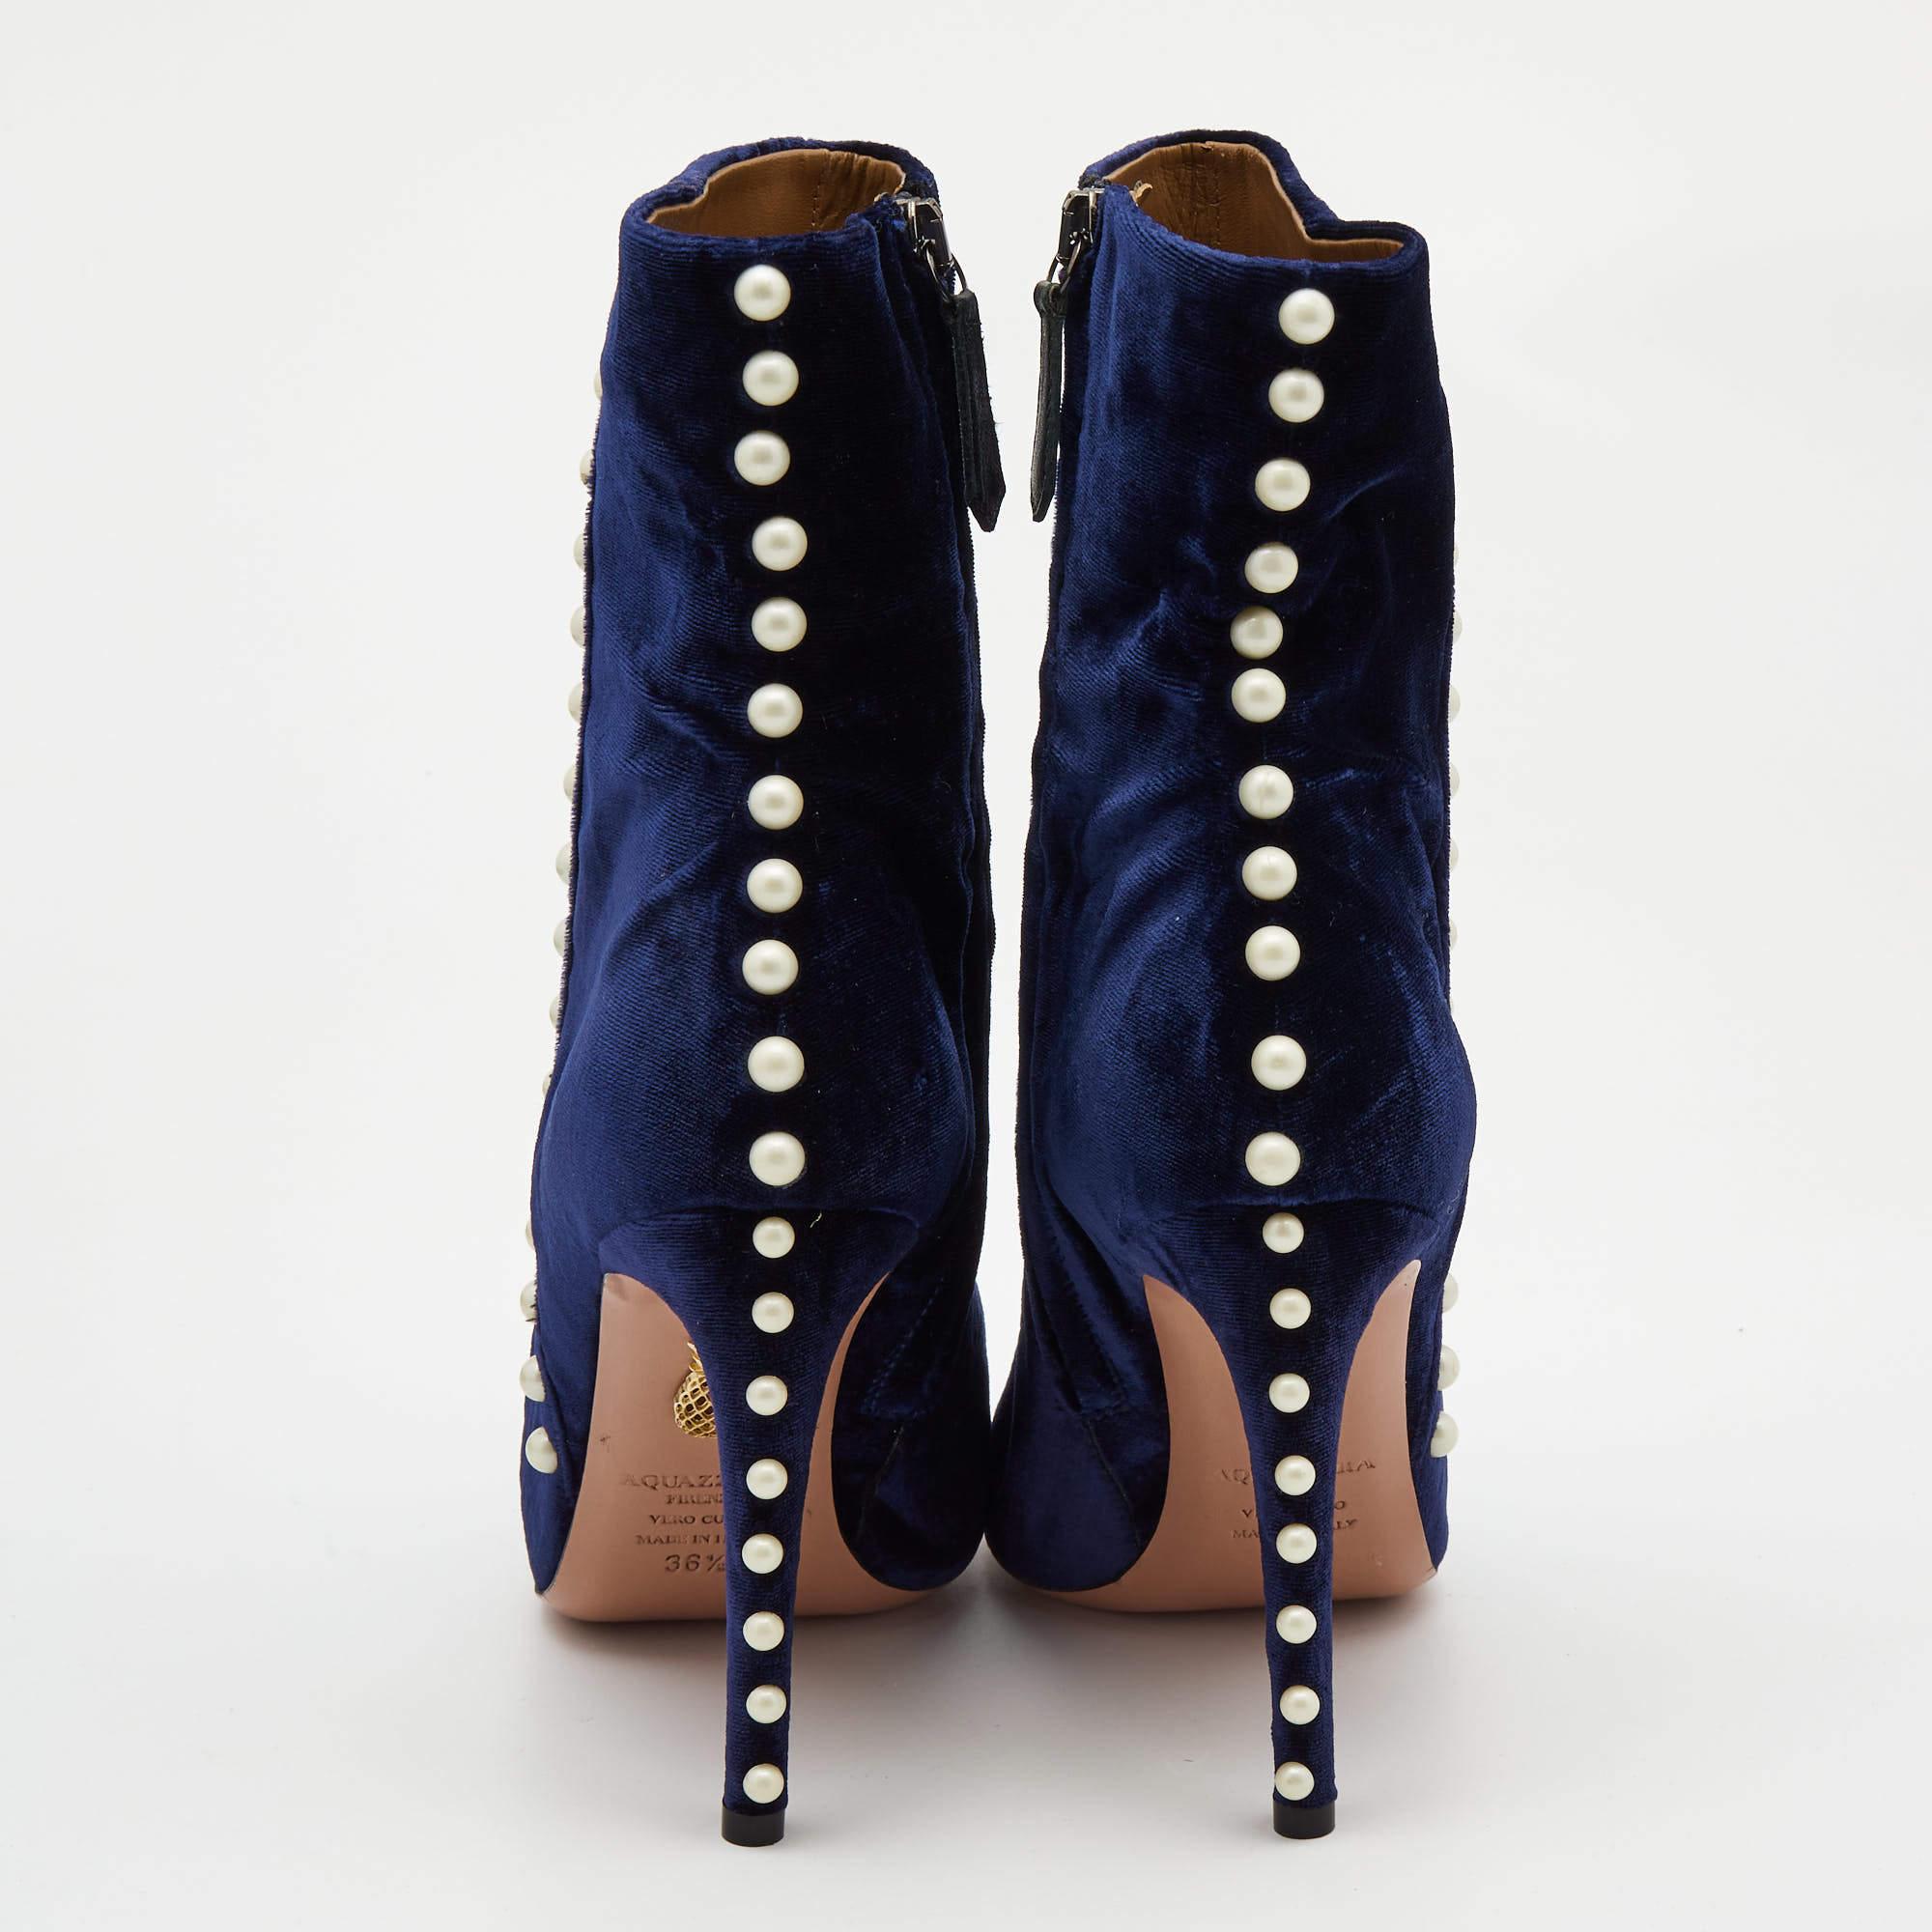 aquazzura boots with pearls